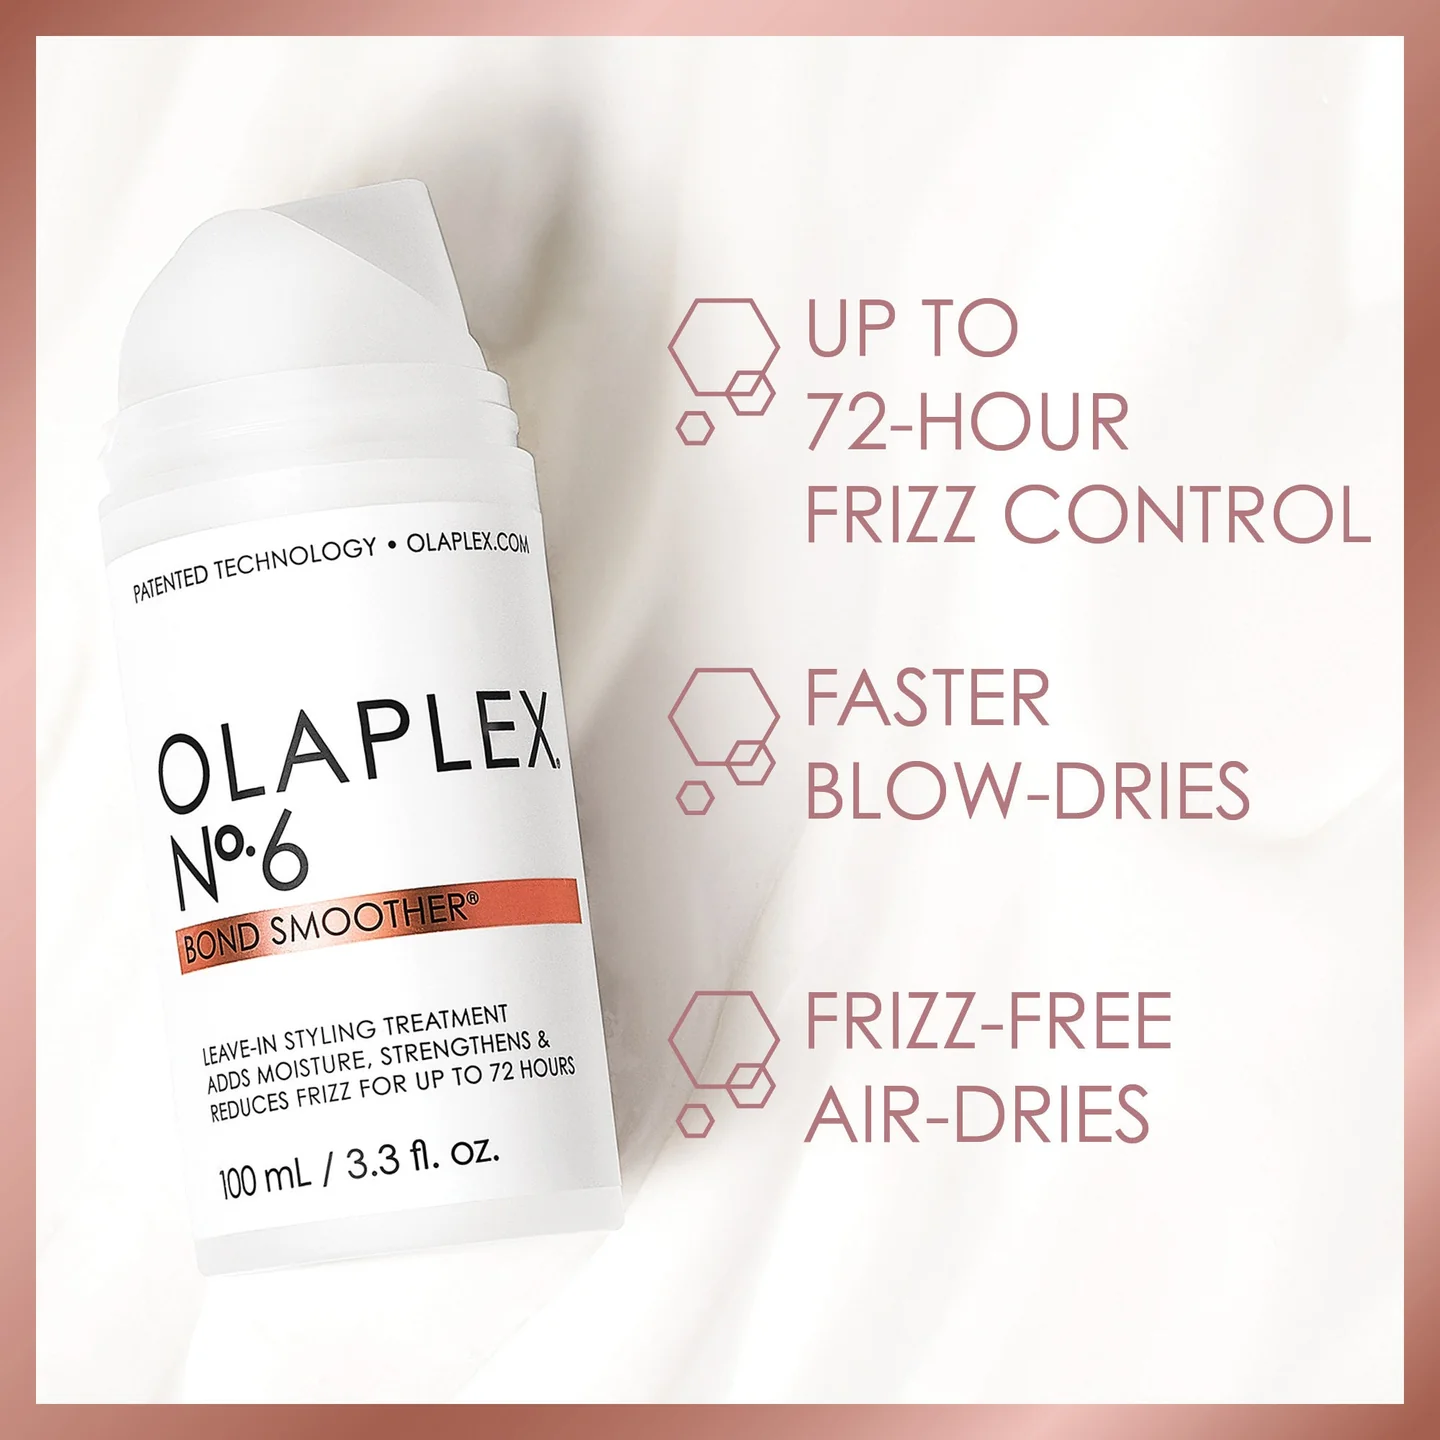 Olaplex - The Complete Hair Repair System (No.0, No.3, No.4, No.5, No.6, No.7, No.8 & No.9) Kit